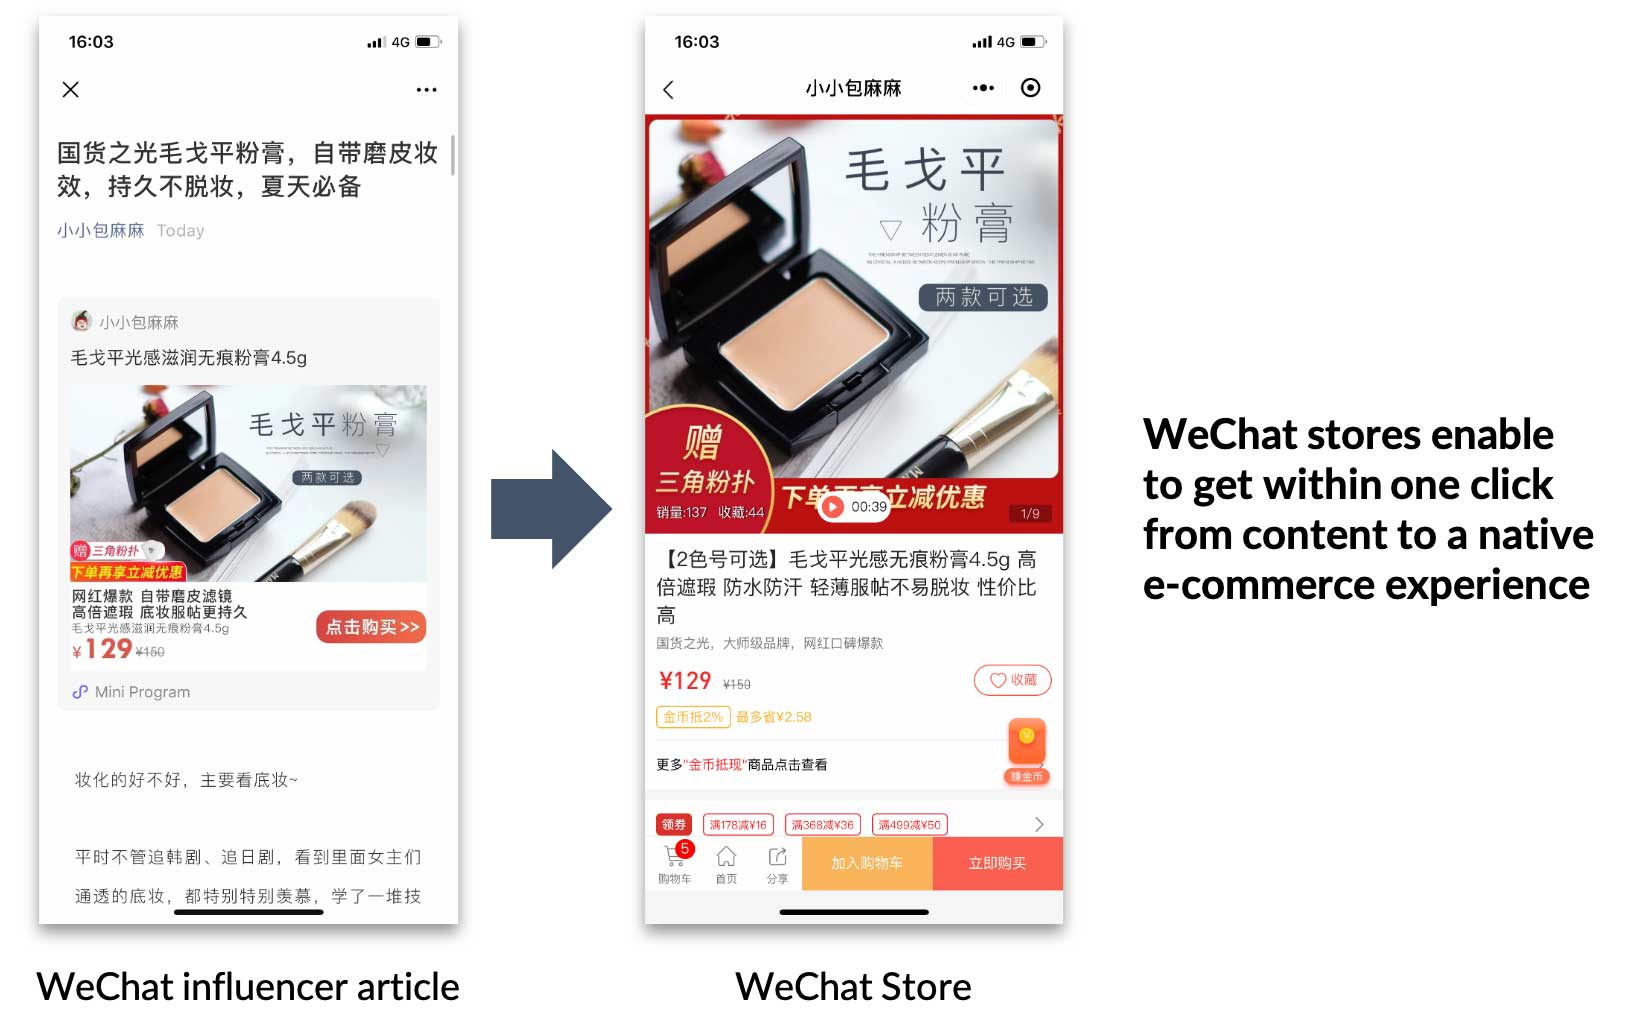 I negozi WeChat consentono agli utenti di passare in un clic dai contenuti all'esperienza di ecommerce